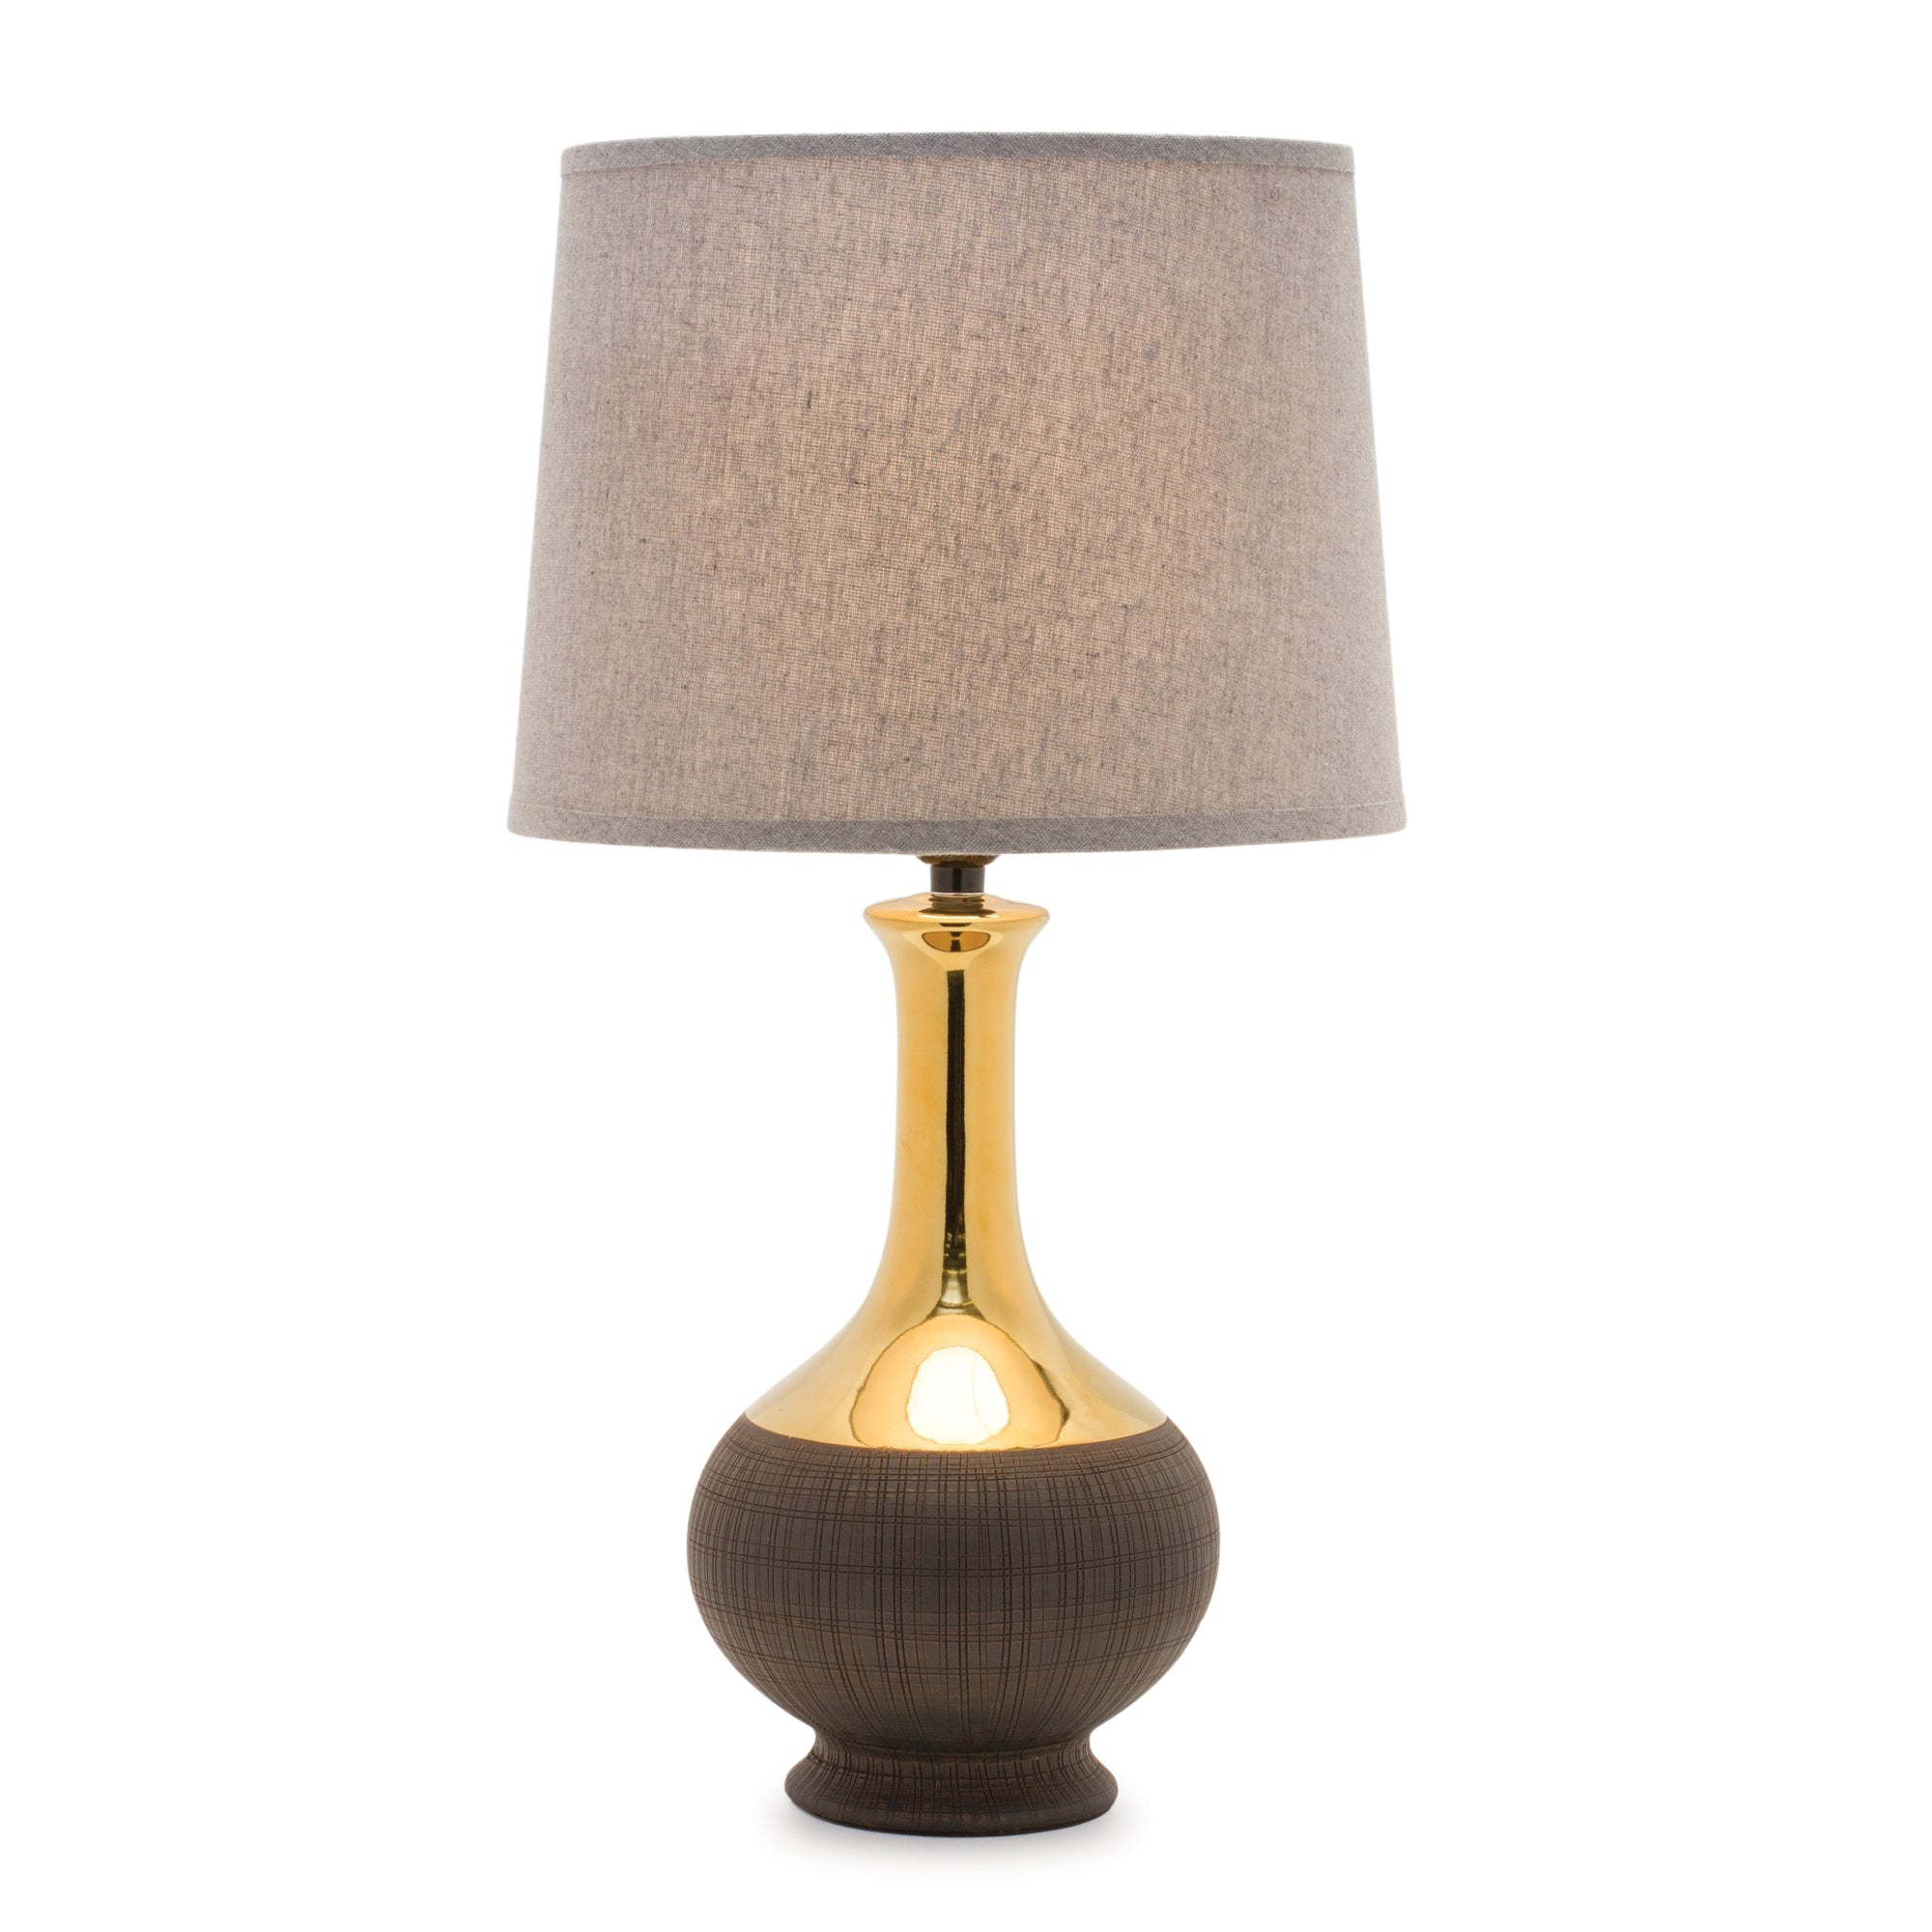 Two Tone Ceramic Lamp 22"H